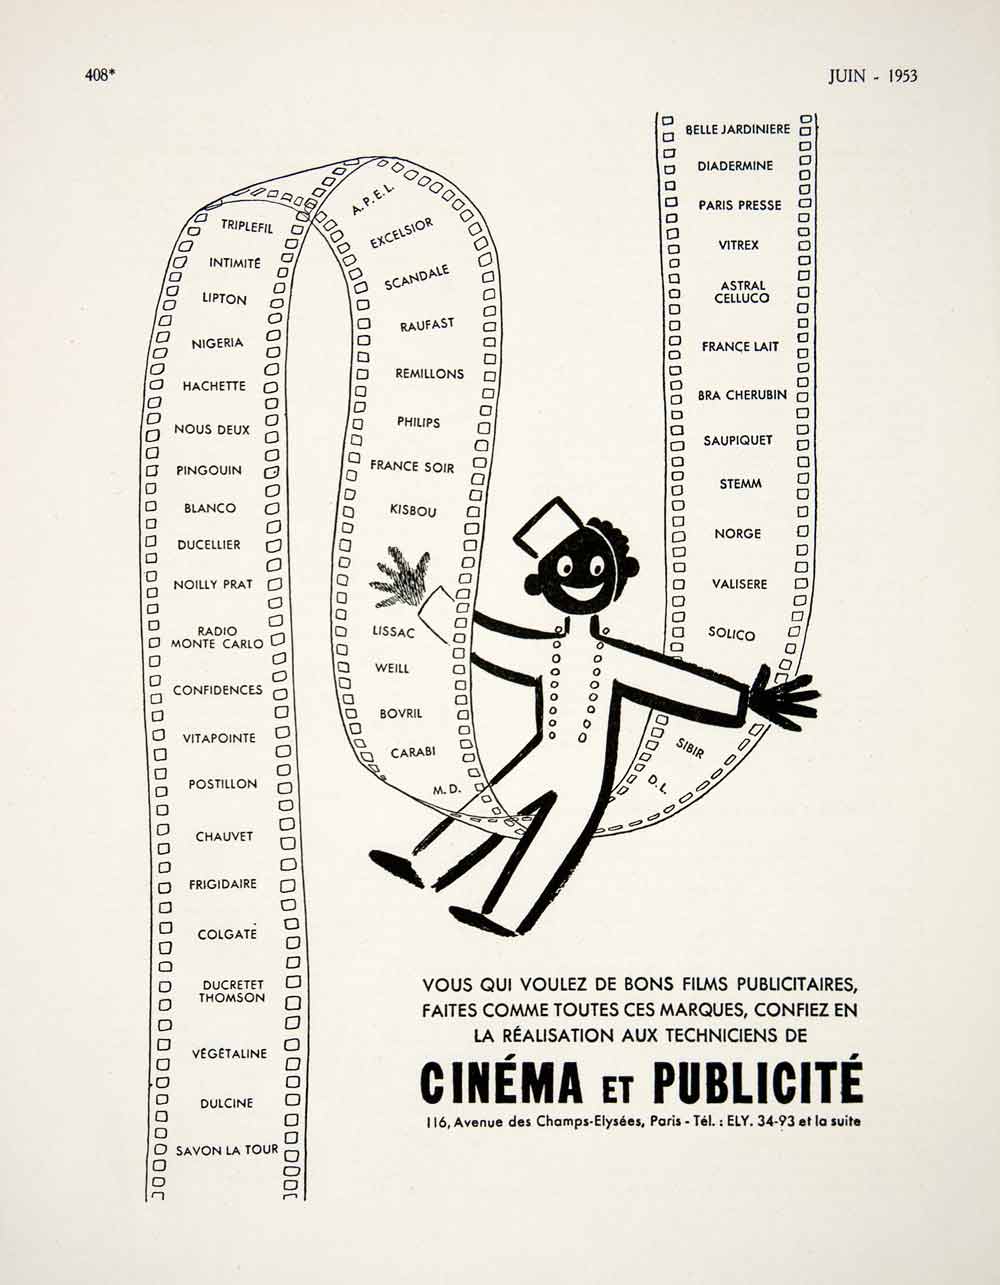 1953 Ad Cinema Publicite Reel 116 Avenue Champs-Elysees Vitrex Raufast VEN8